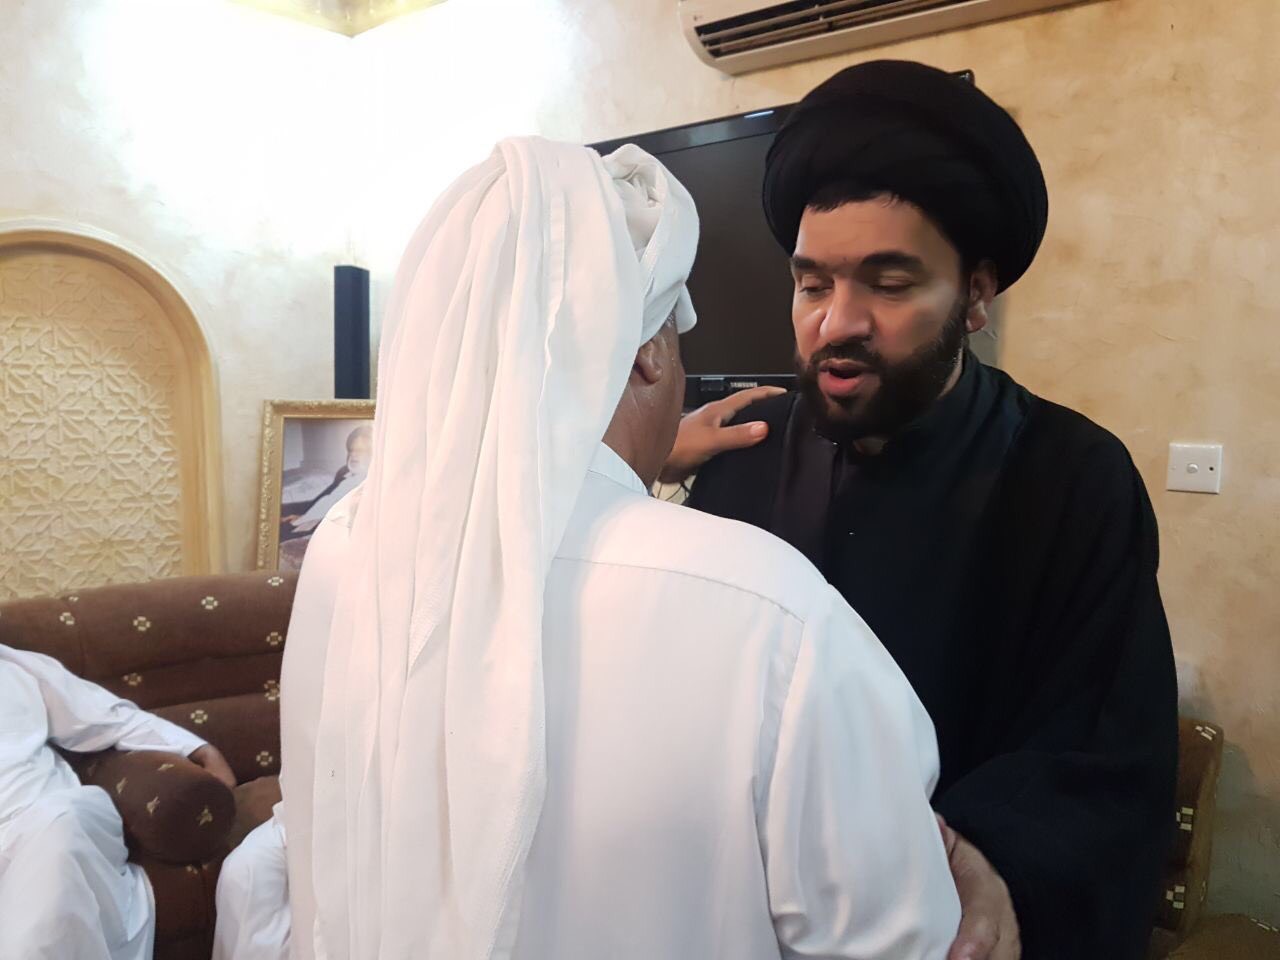 استقبال حاشد لسماحة السيّد علي الموسوي بعد عناقه الحريّة